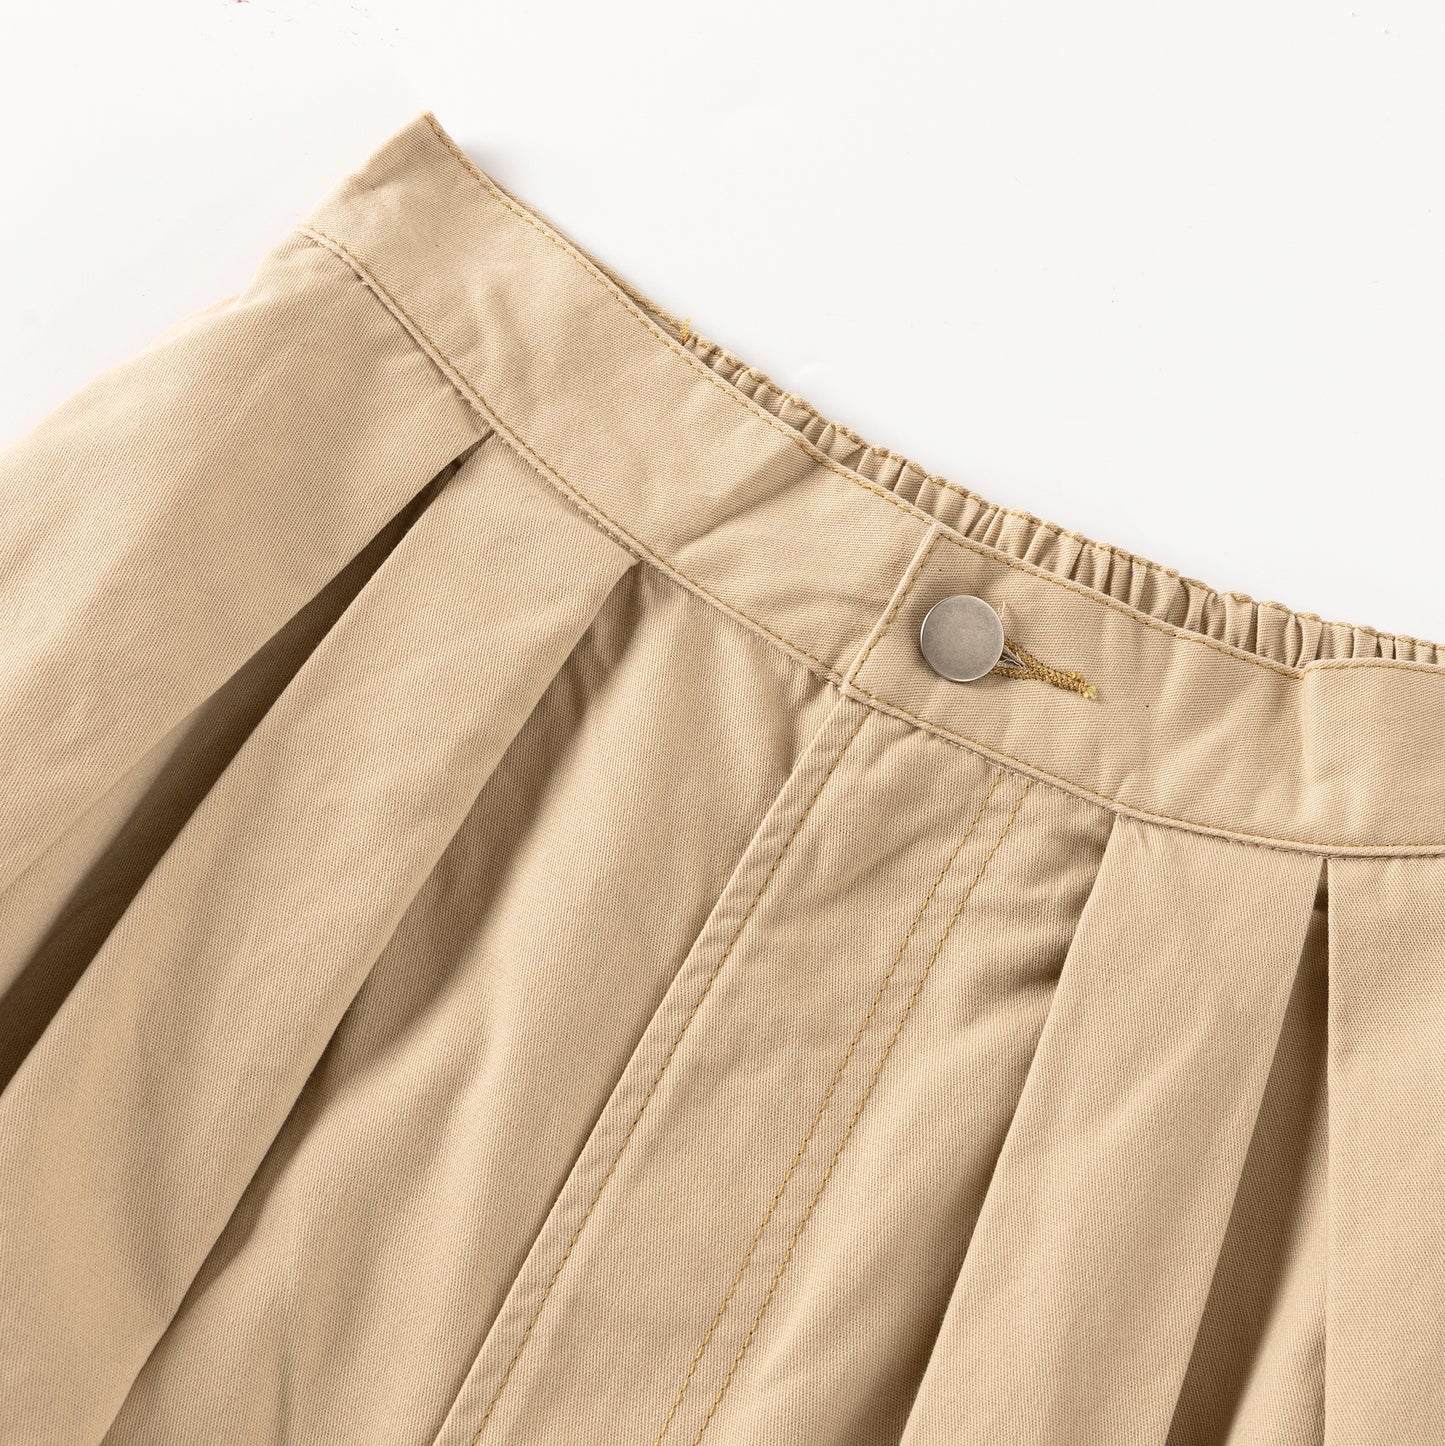 Preppy Skirt